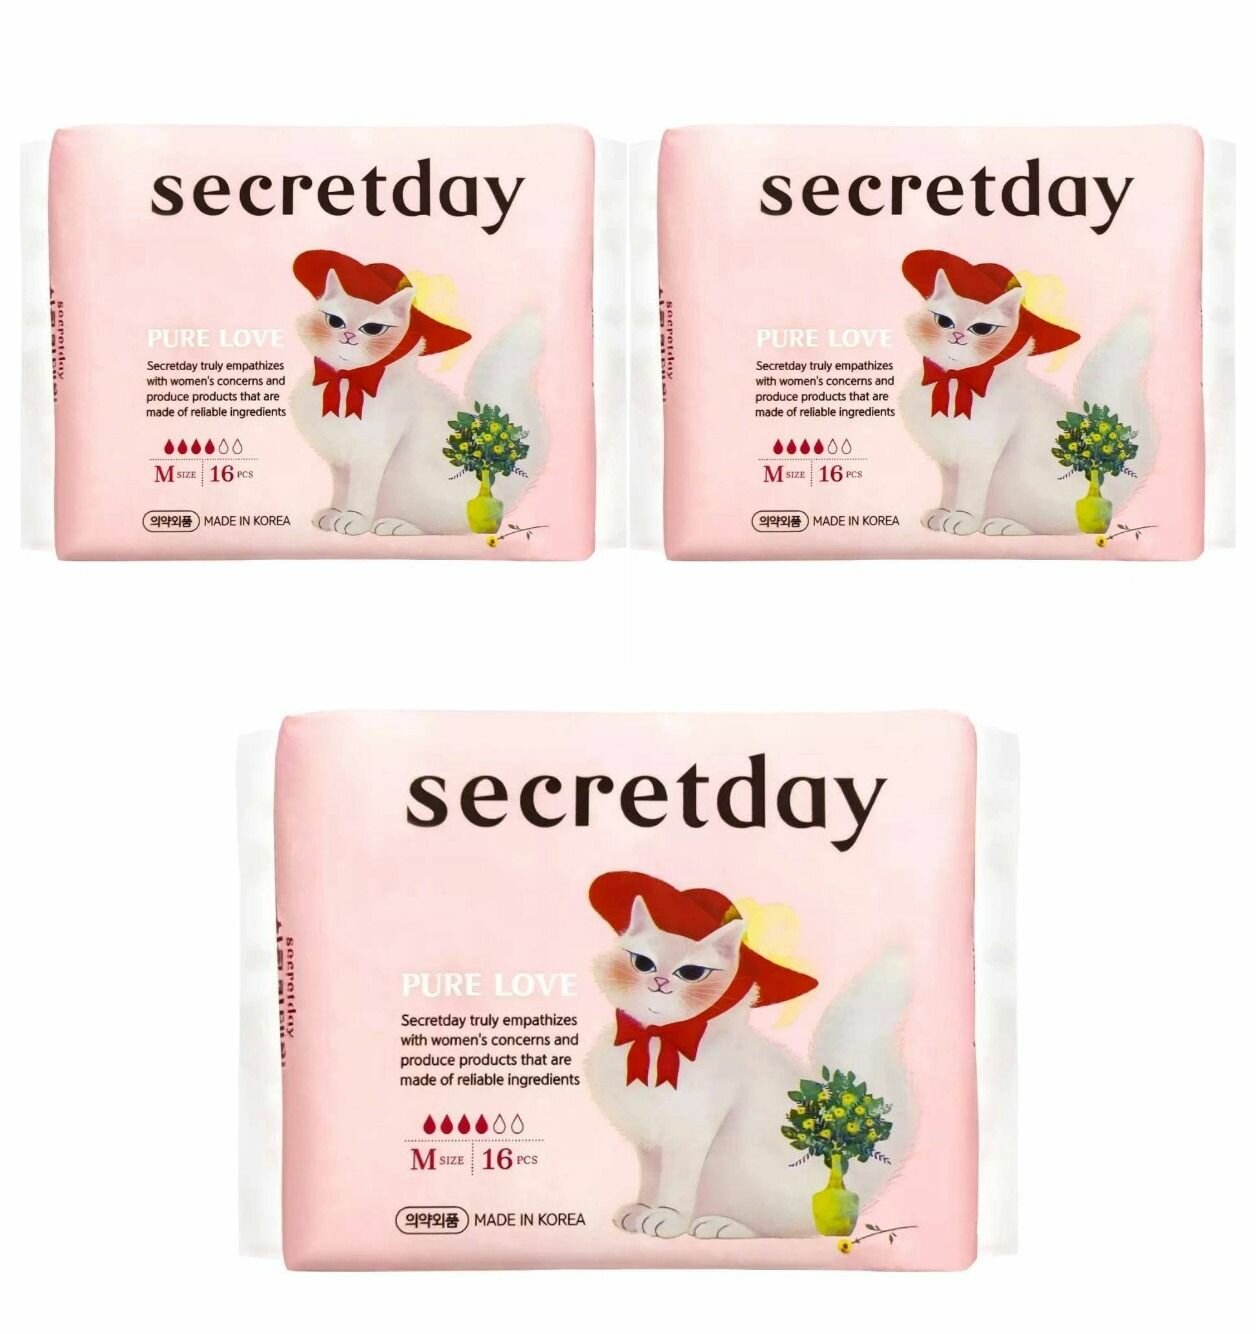 Secret day pure love Ультратонкие дышащие прокладки, M size, 16 шт, 3 упаковки.